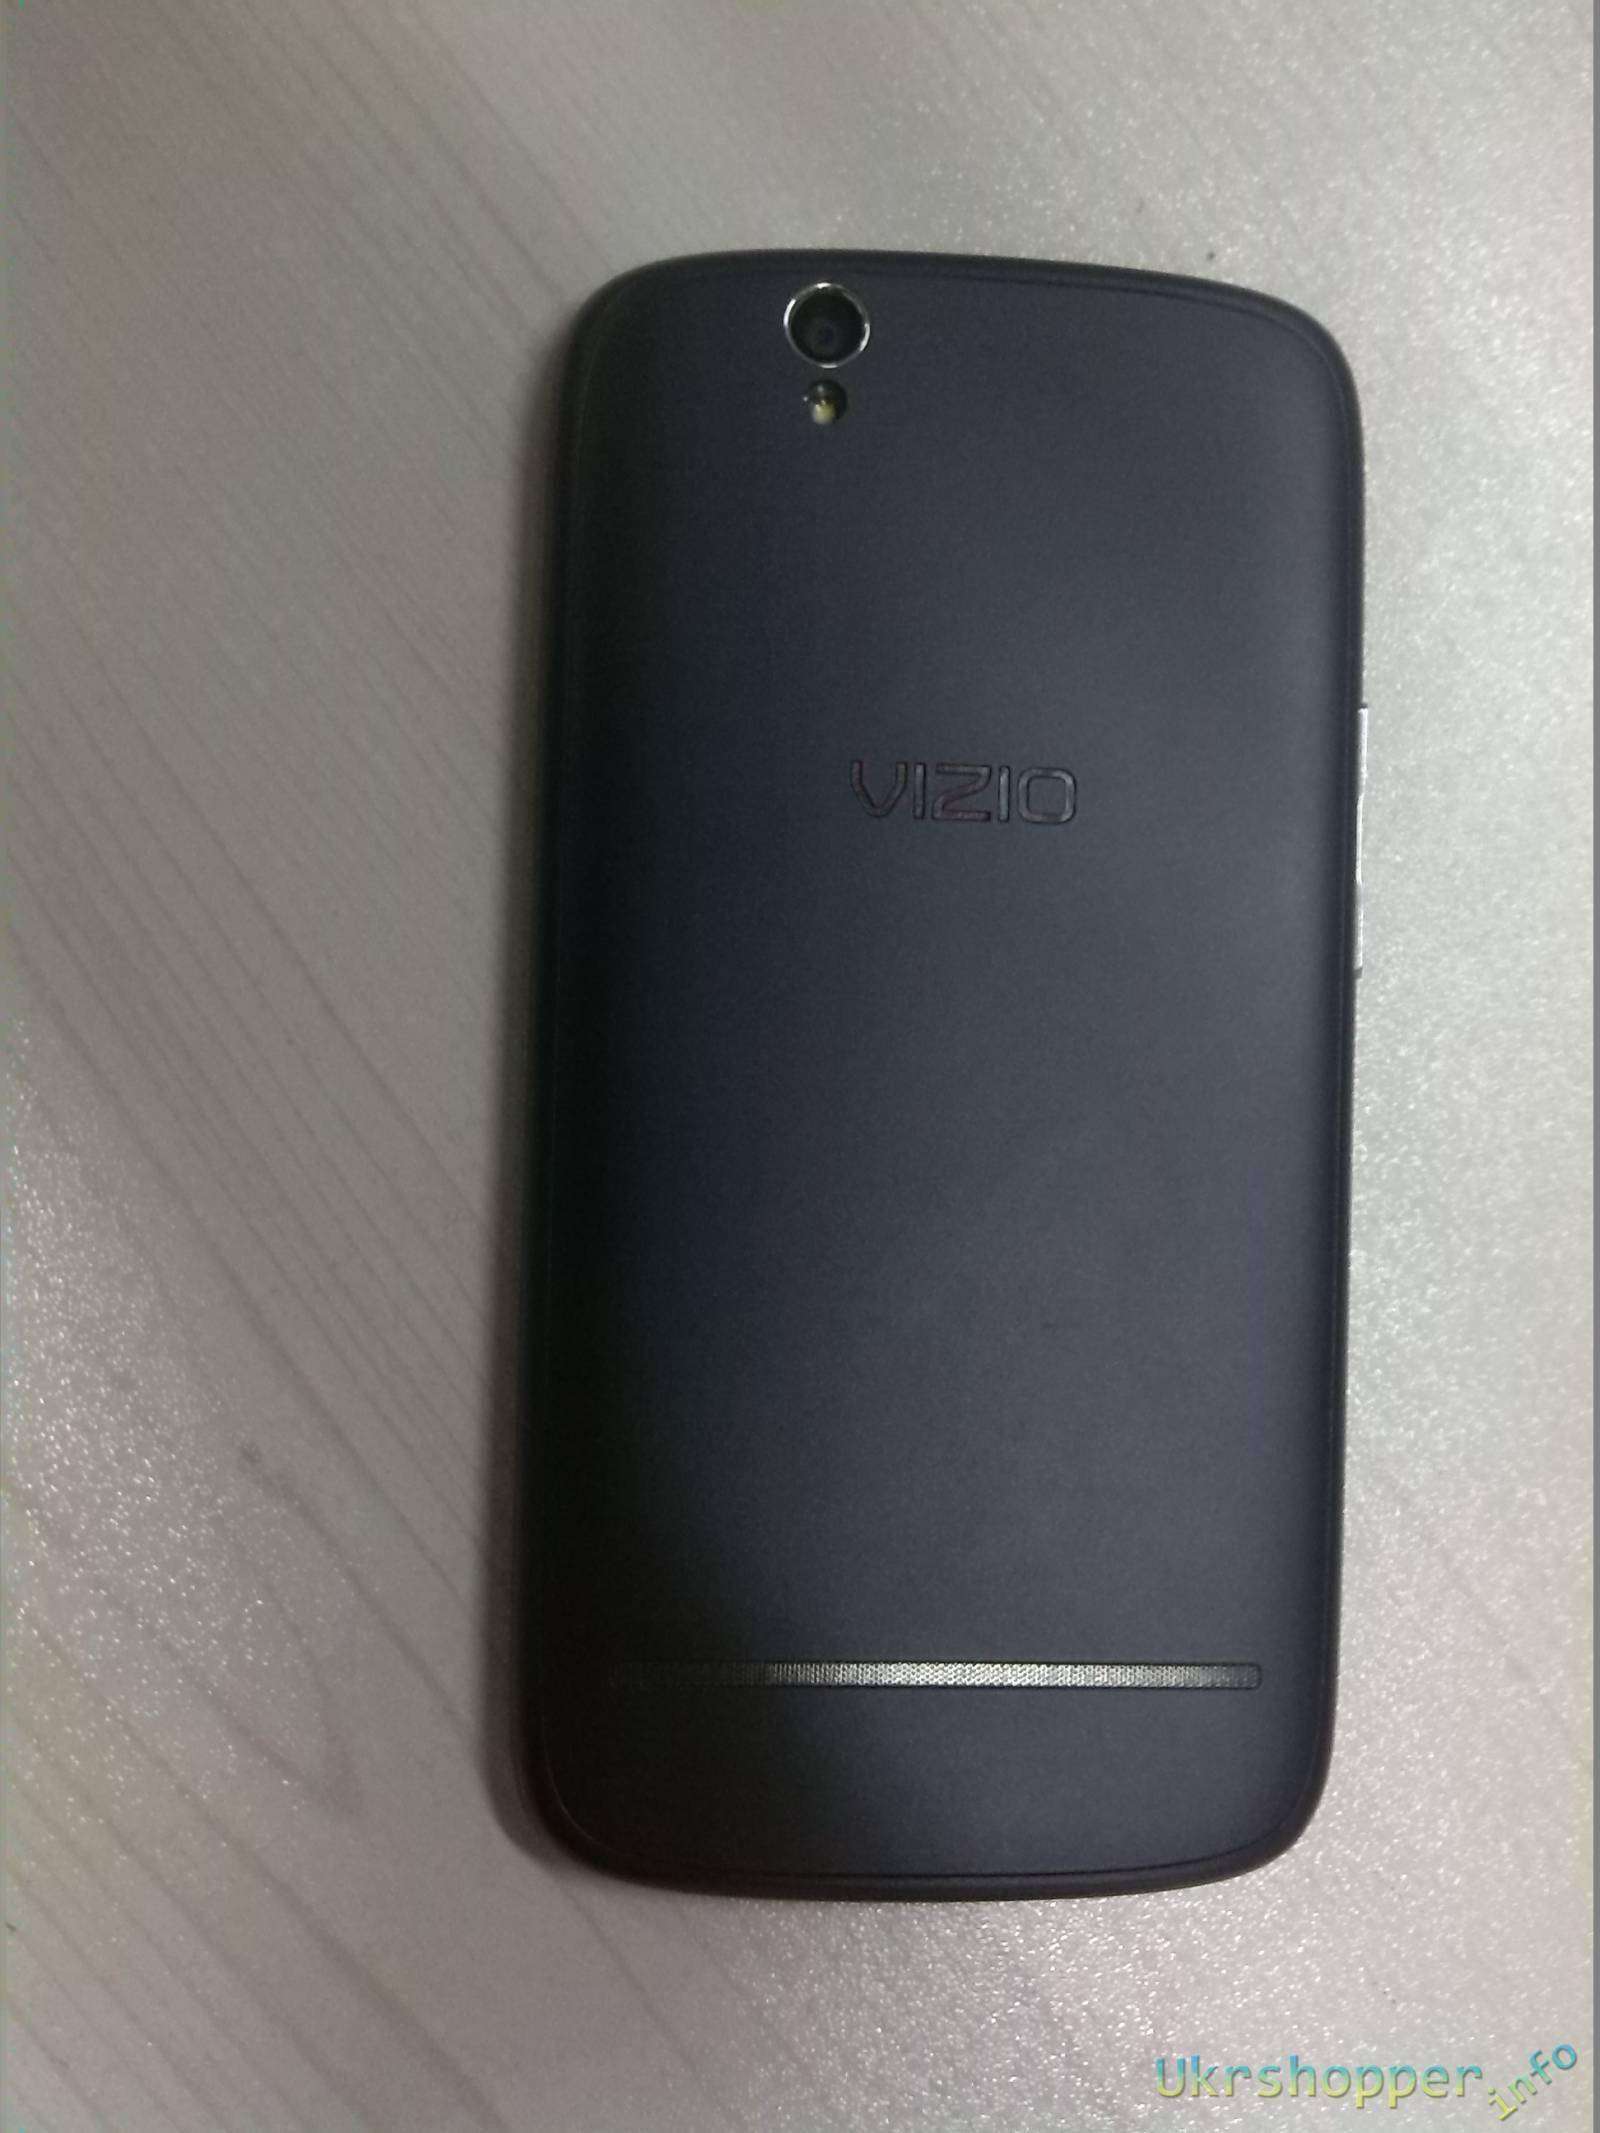 Amazon: Красивый телефончик VIZIO VP800, первые впечатления